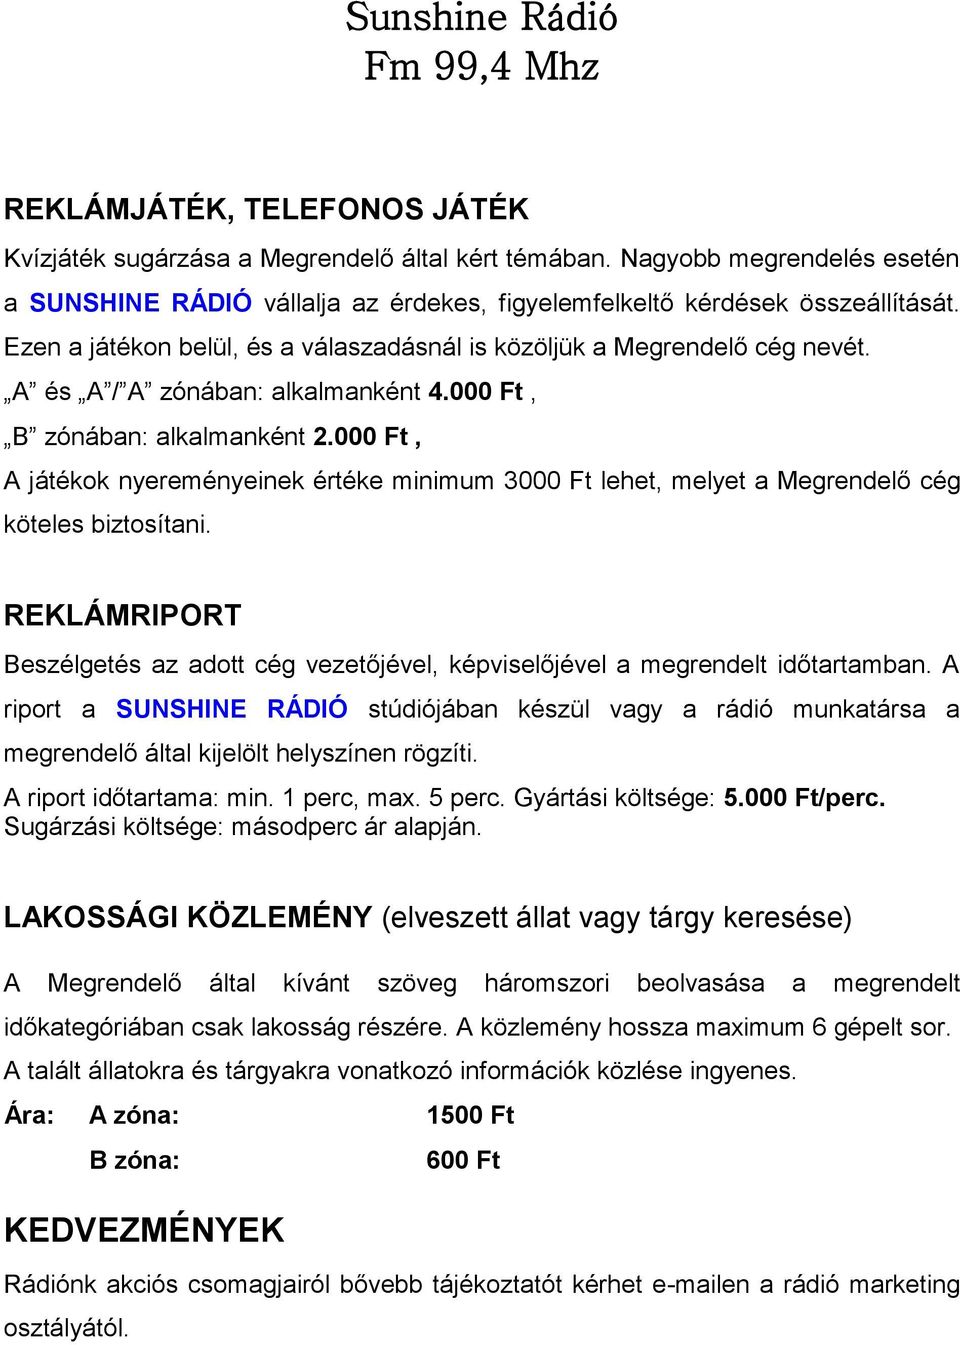 Sunshine Rádió Fm 99,4 Mhz - PDF Ingyenes letöltés